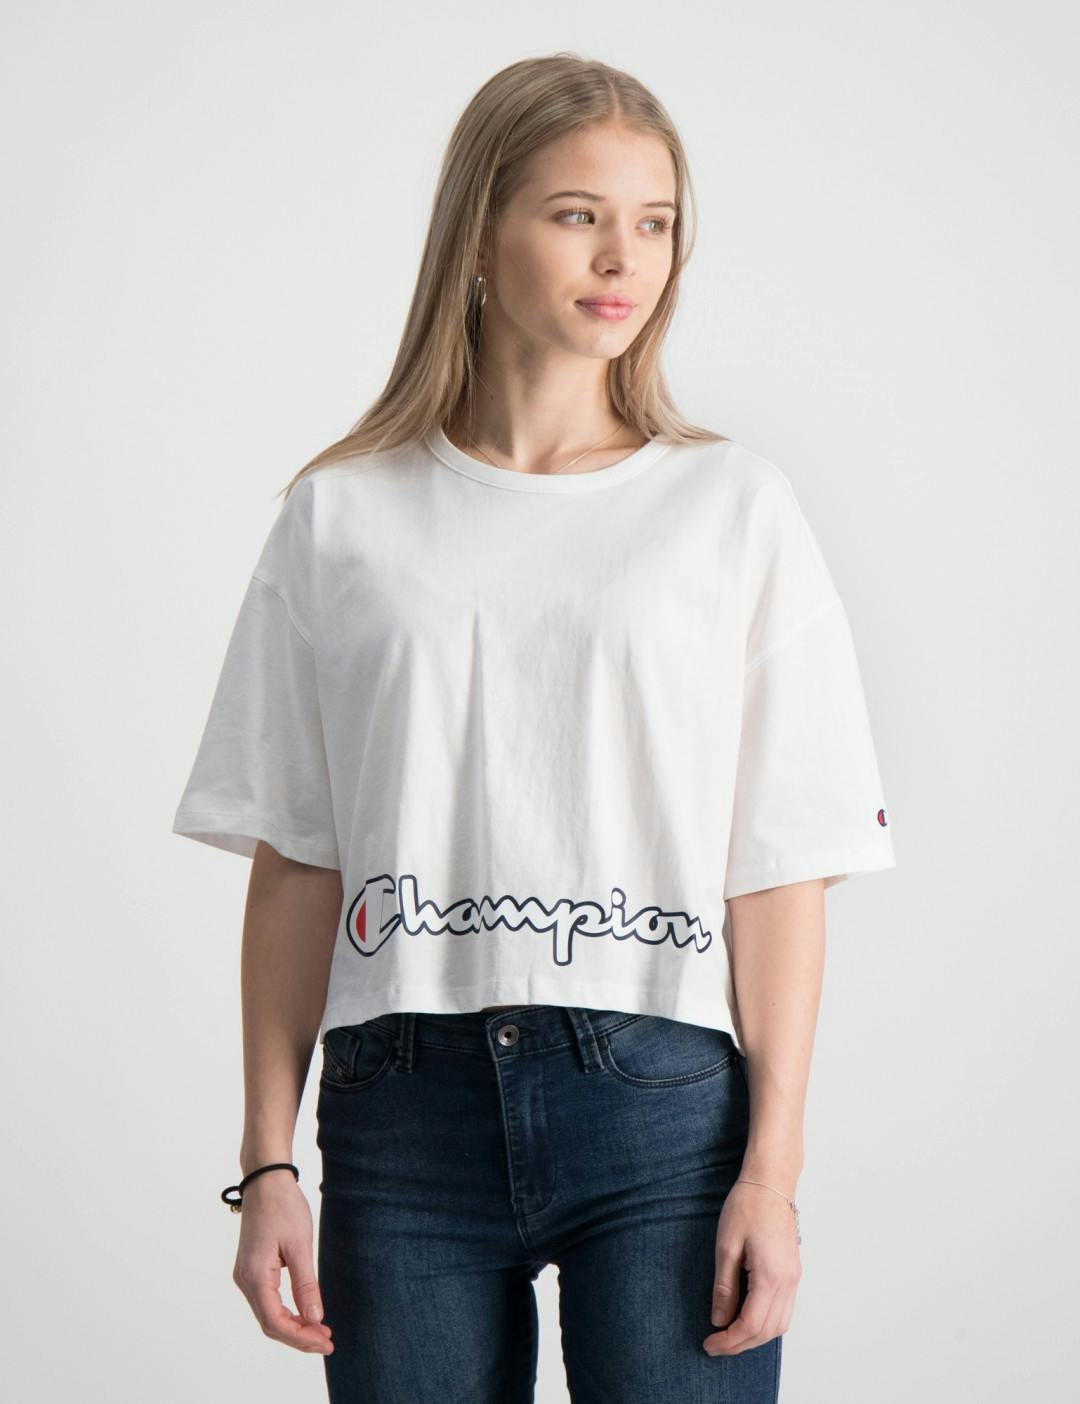 Weiß Crewneck T-Shirt für Store Brand | Mädchen Kids